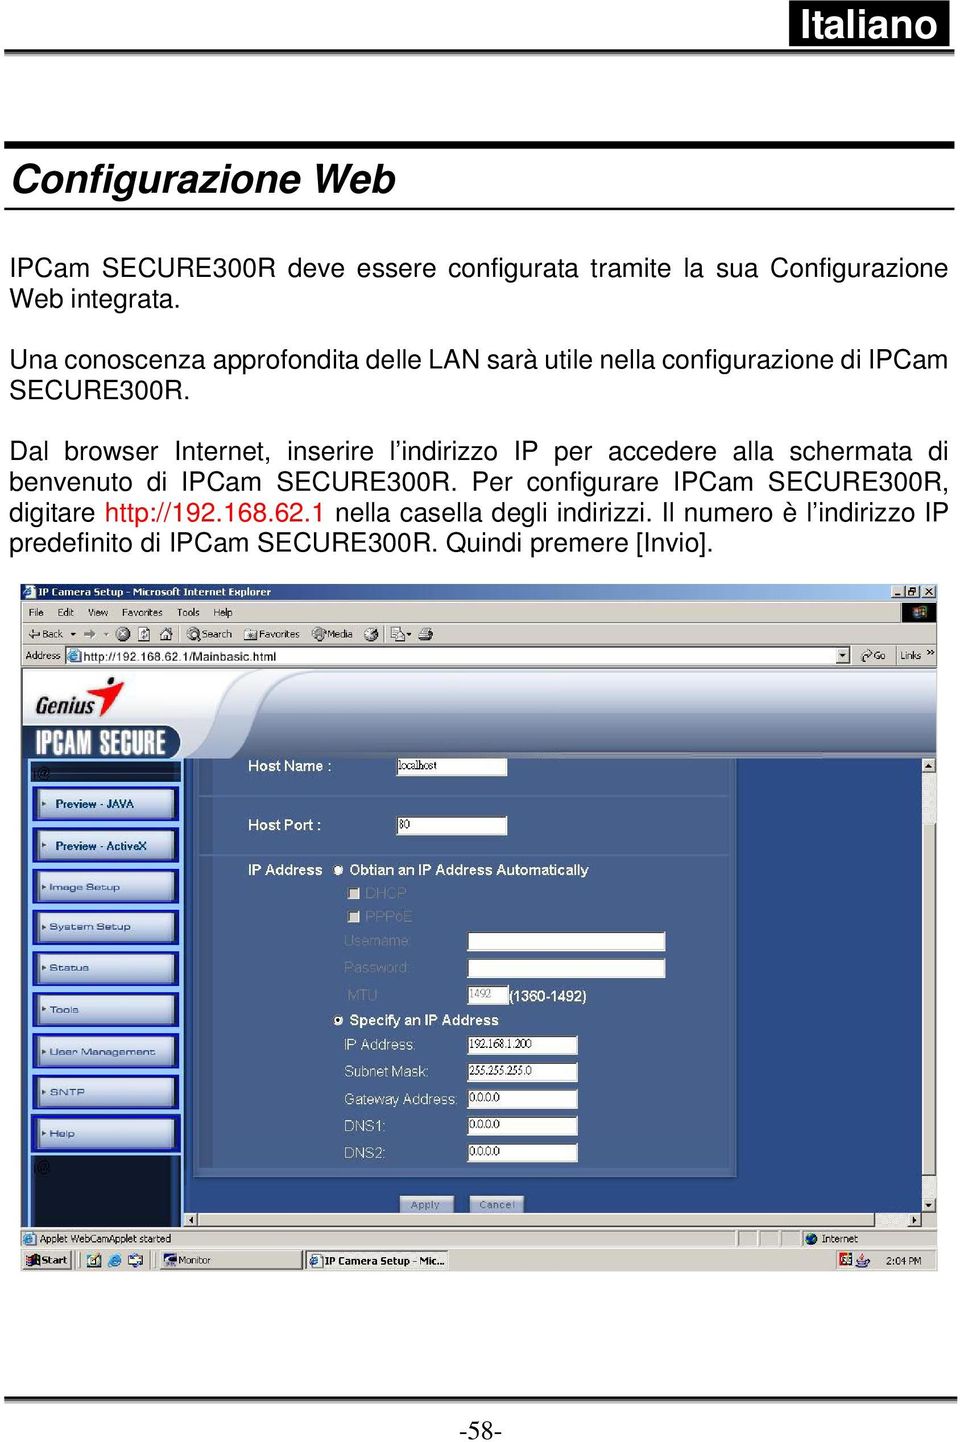 Dal browser Internet, inserire l indirizzo IP per accedere alla schermata di benvenuto di IPCam SECURE300R.